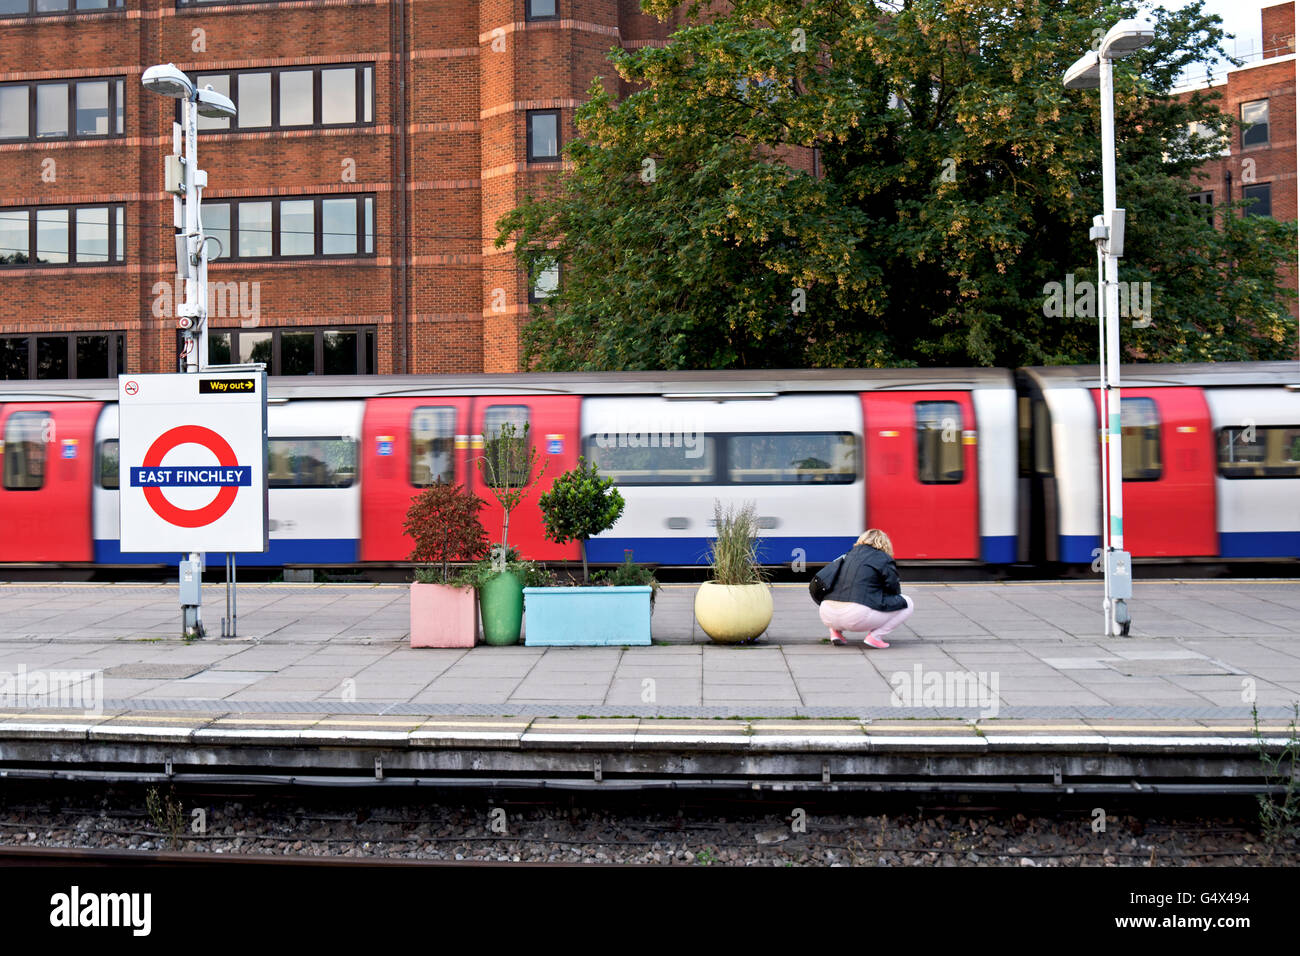 Une femme s'accroupit par quelques pots de couleur pastel sur la plate-forme de la station de métro East Finchley, comme un train passe. Banque D'Images